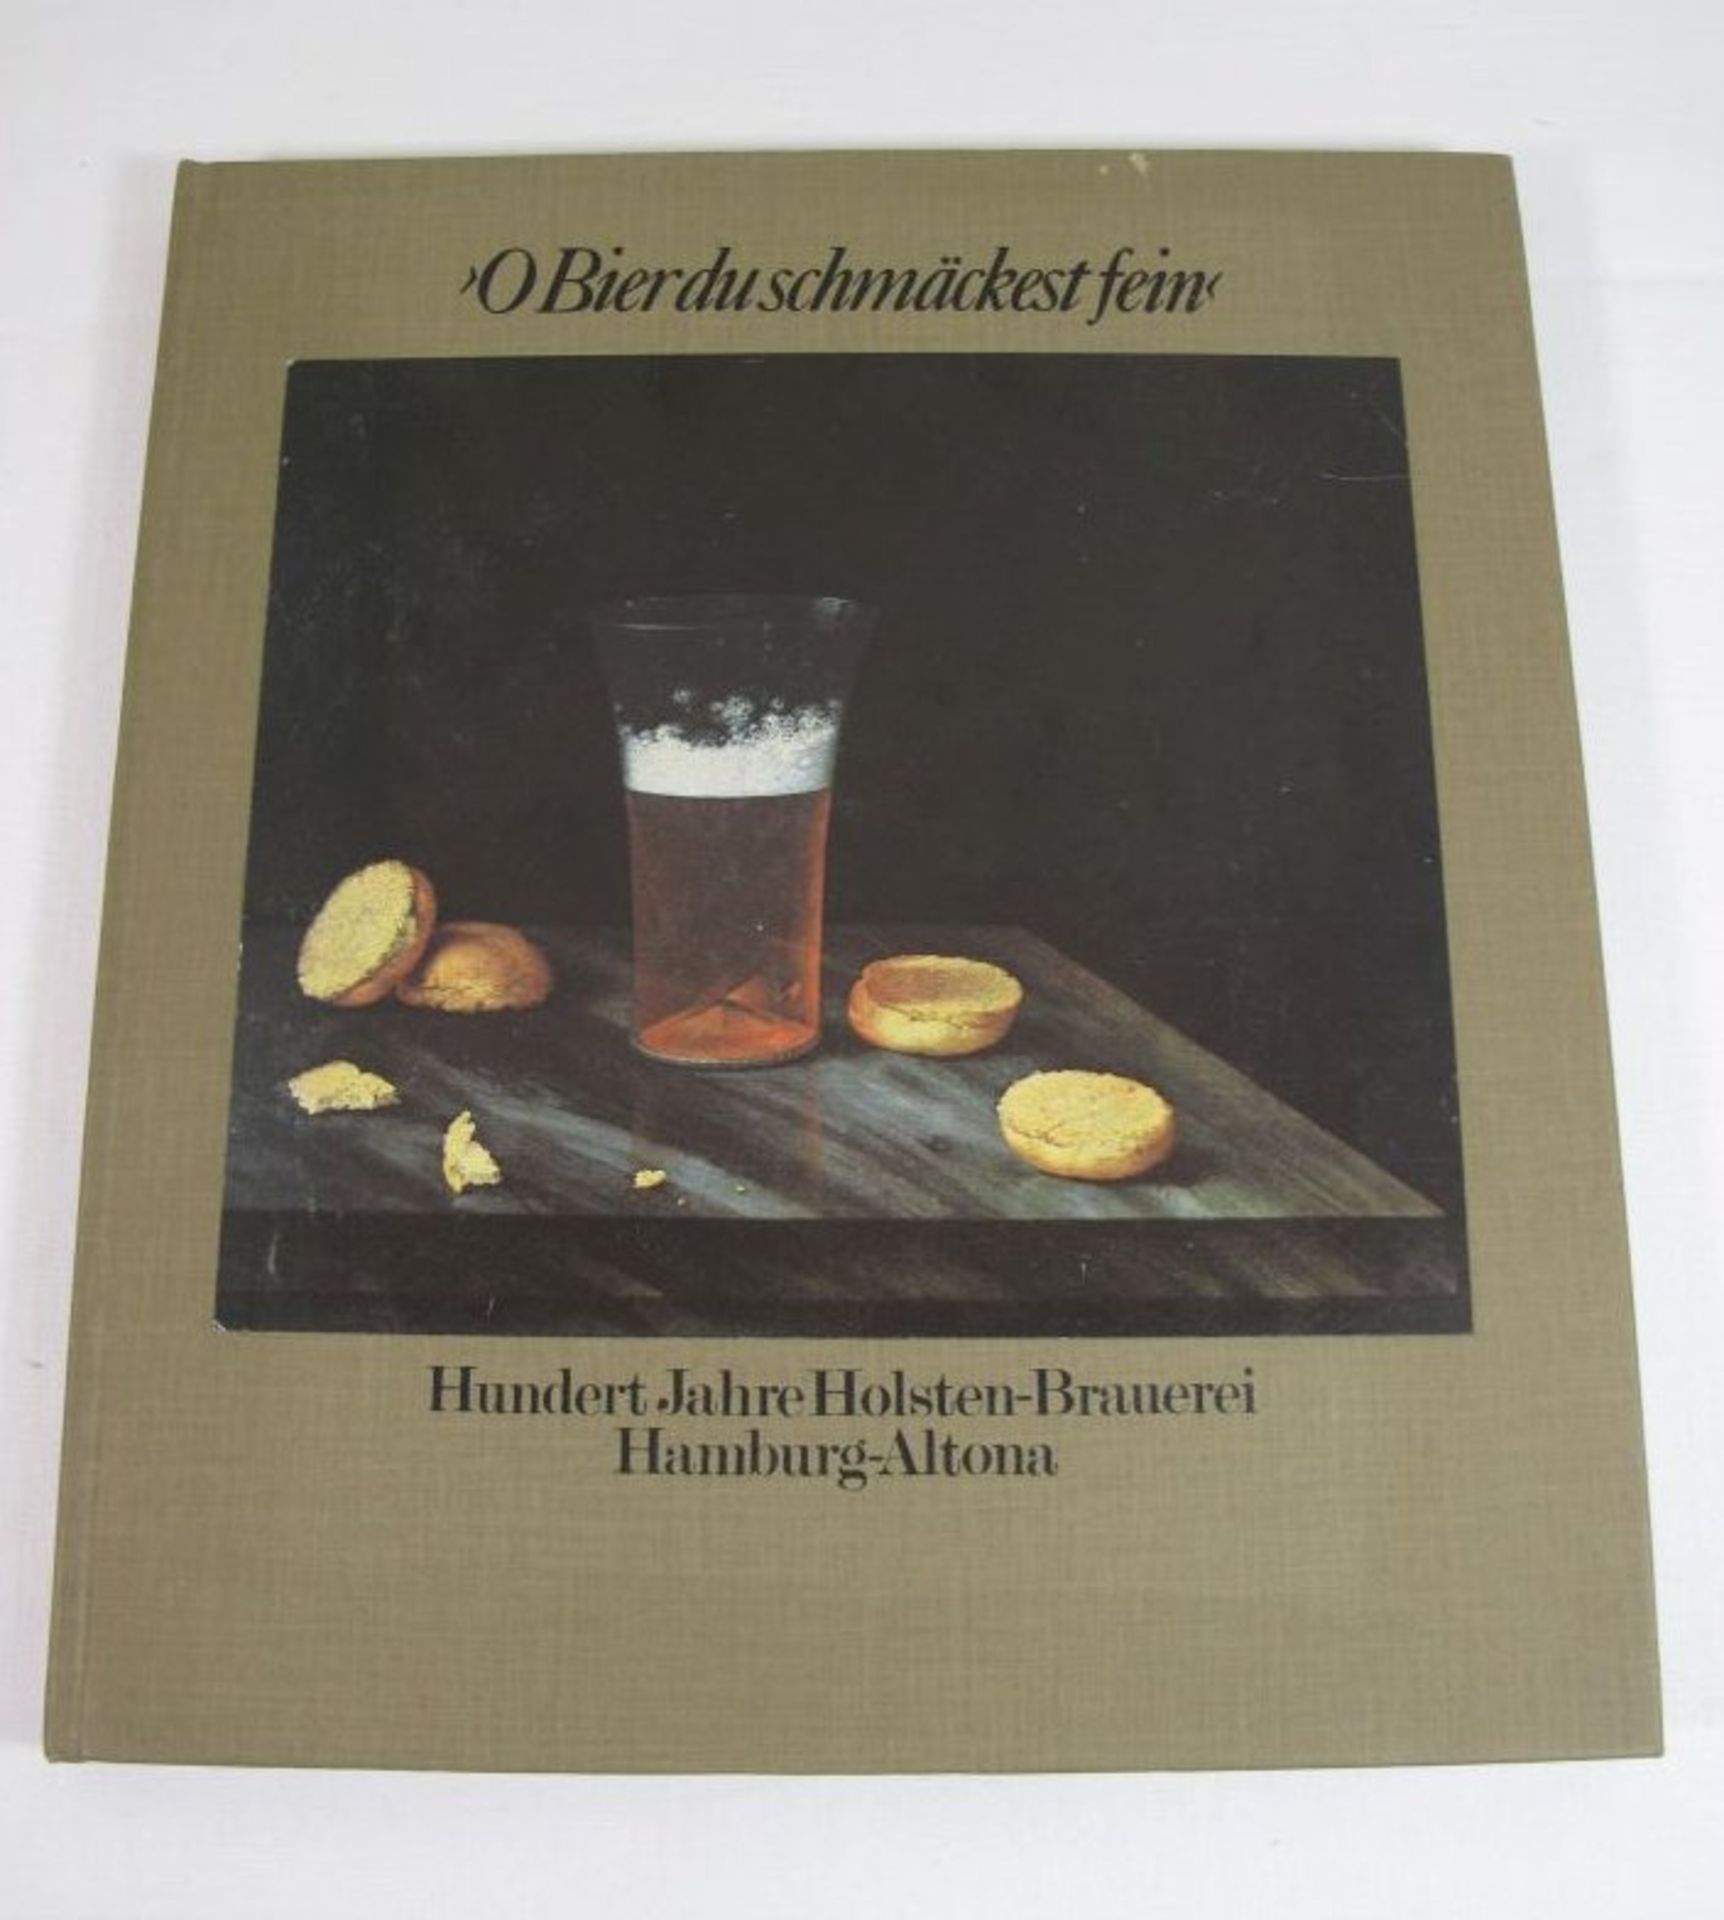 O Bier du schmäckest fein, Geschichten zum 100jährigen bestehen der Holsten Brauerei, 1979